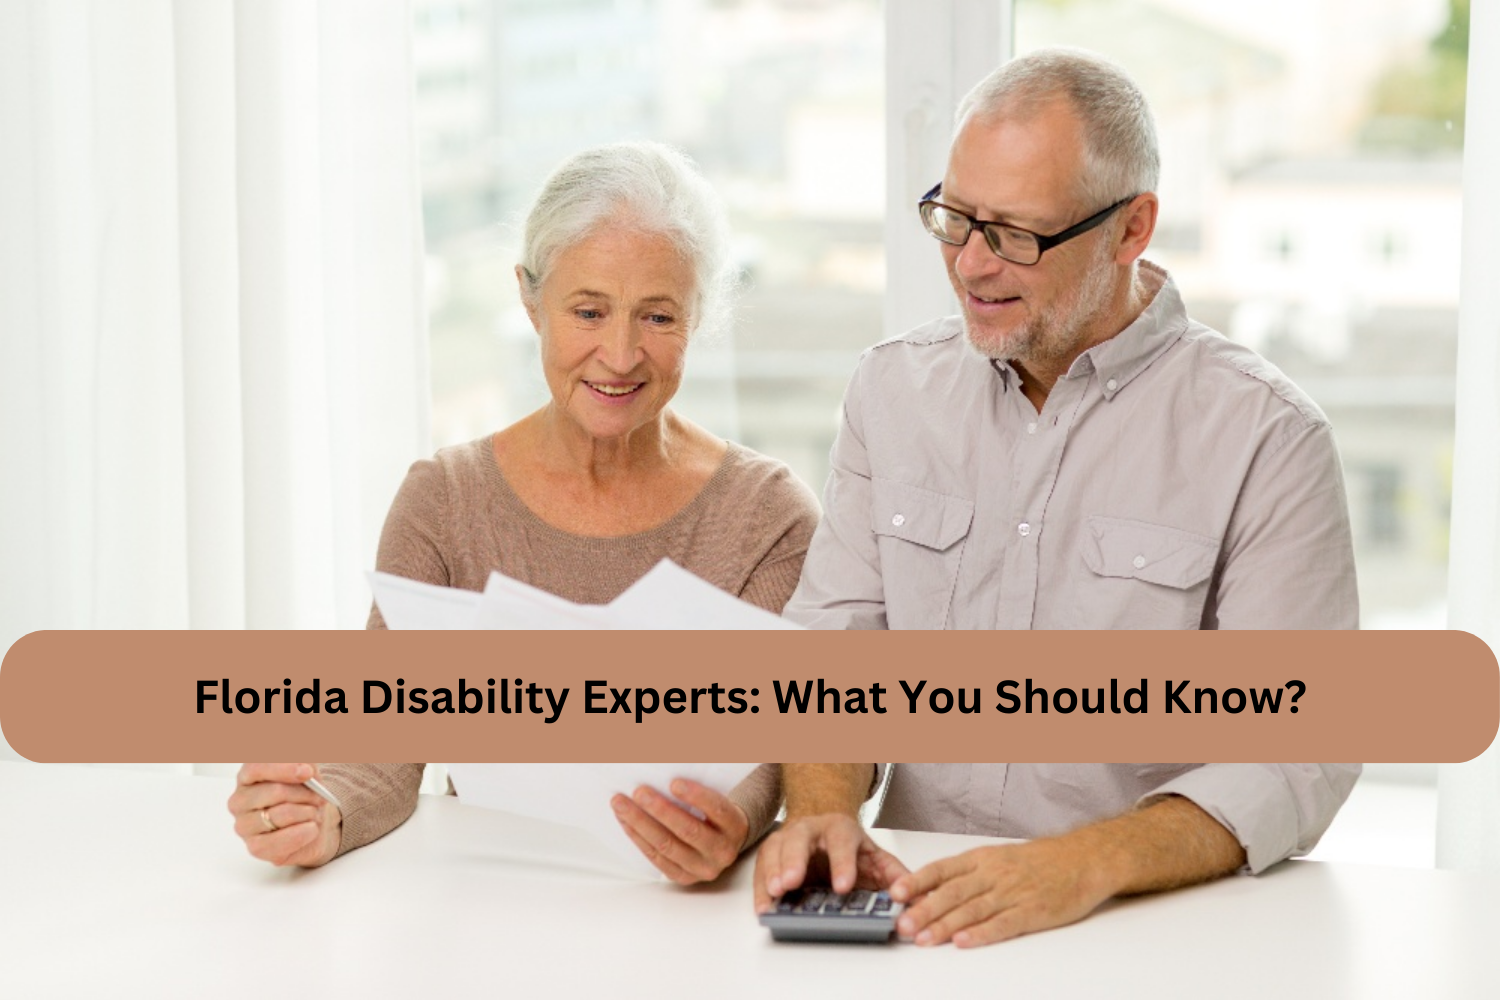 Florida Disability Experts